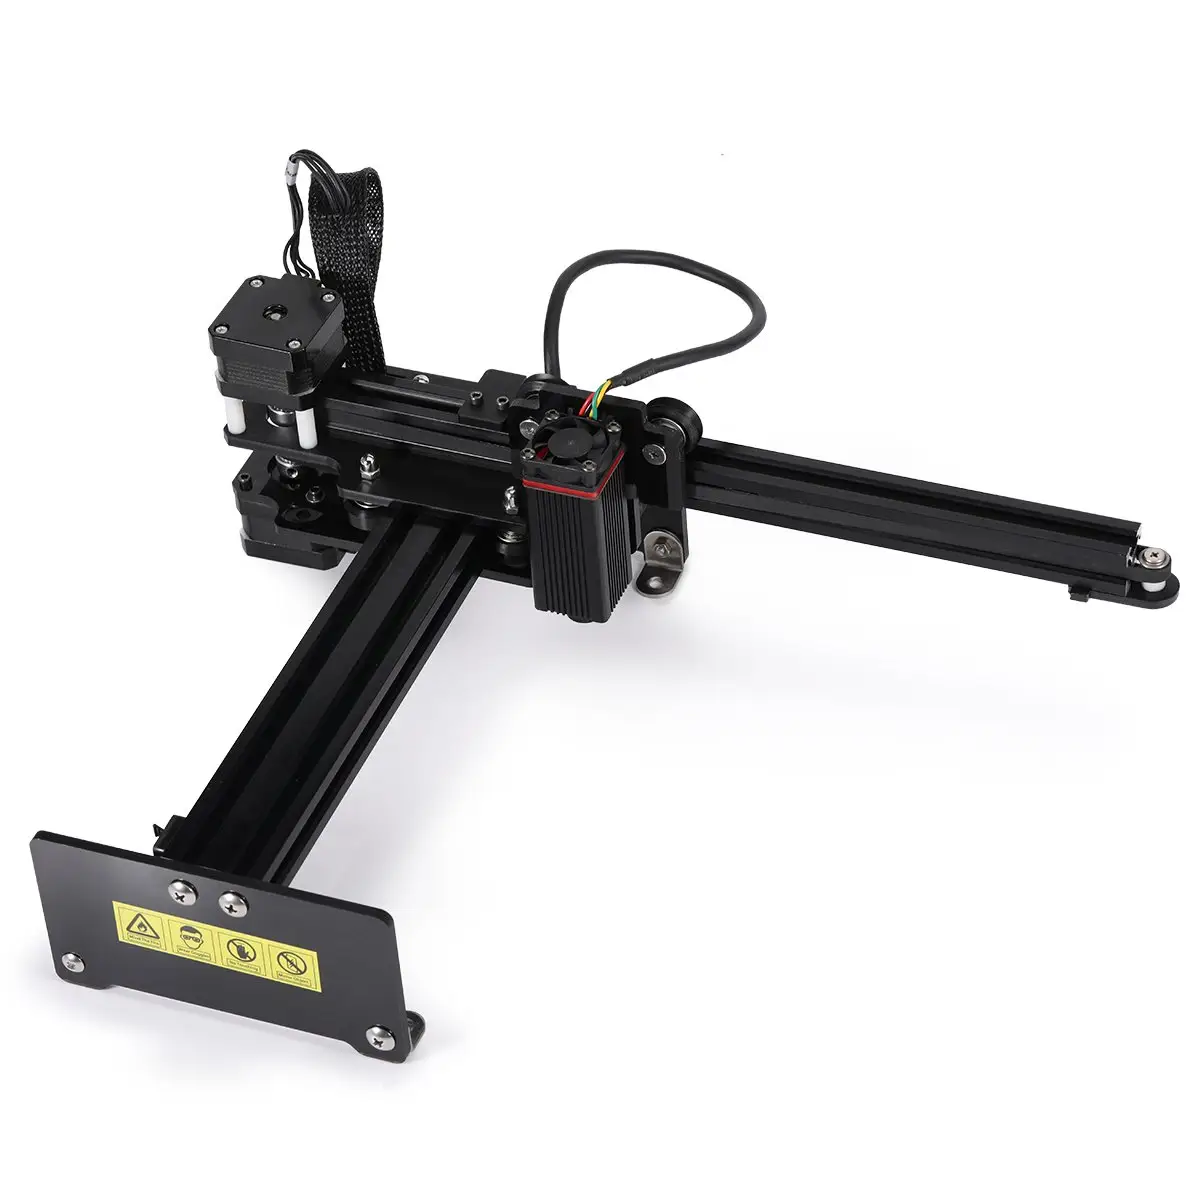 NEJE 7w/10w Mini Machine de gravure de découpe Laser CNC avec application sans fil, sculpture Area170 x 170mm